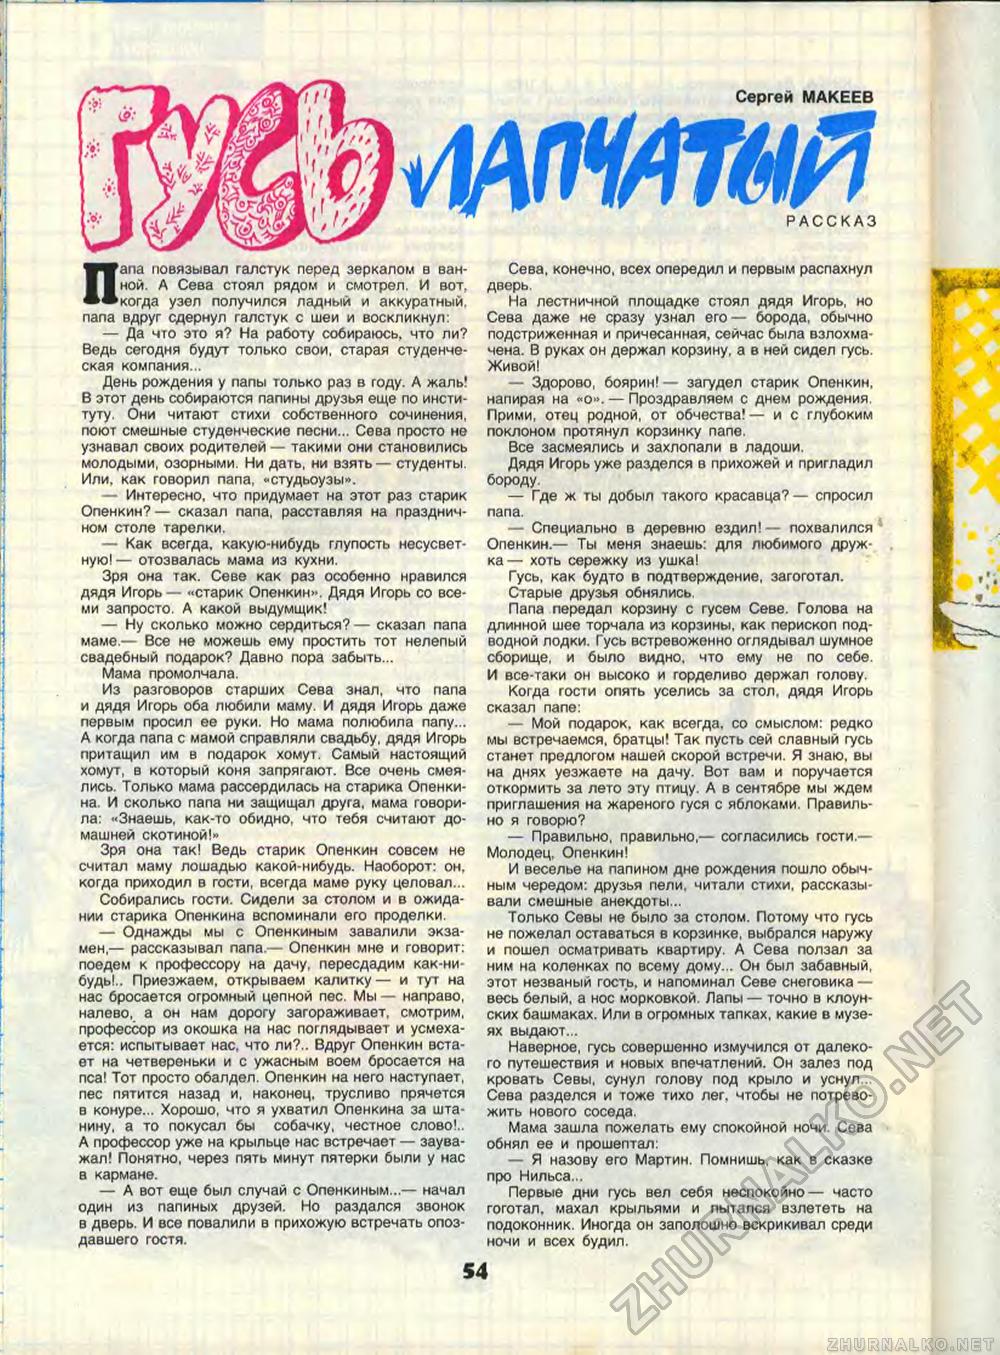  1989-10,  56